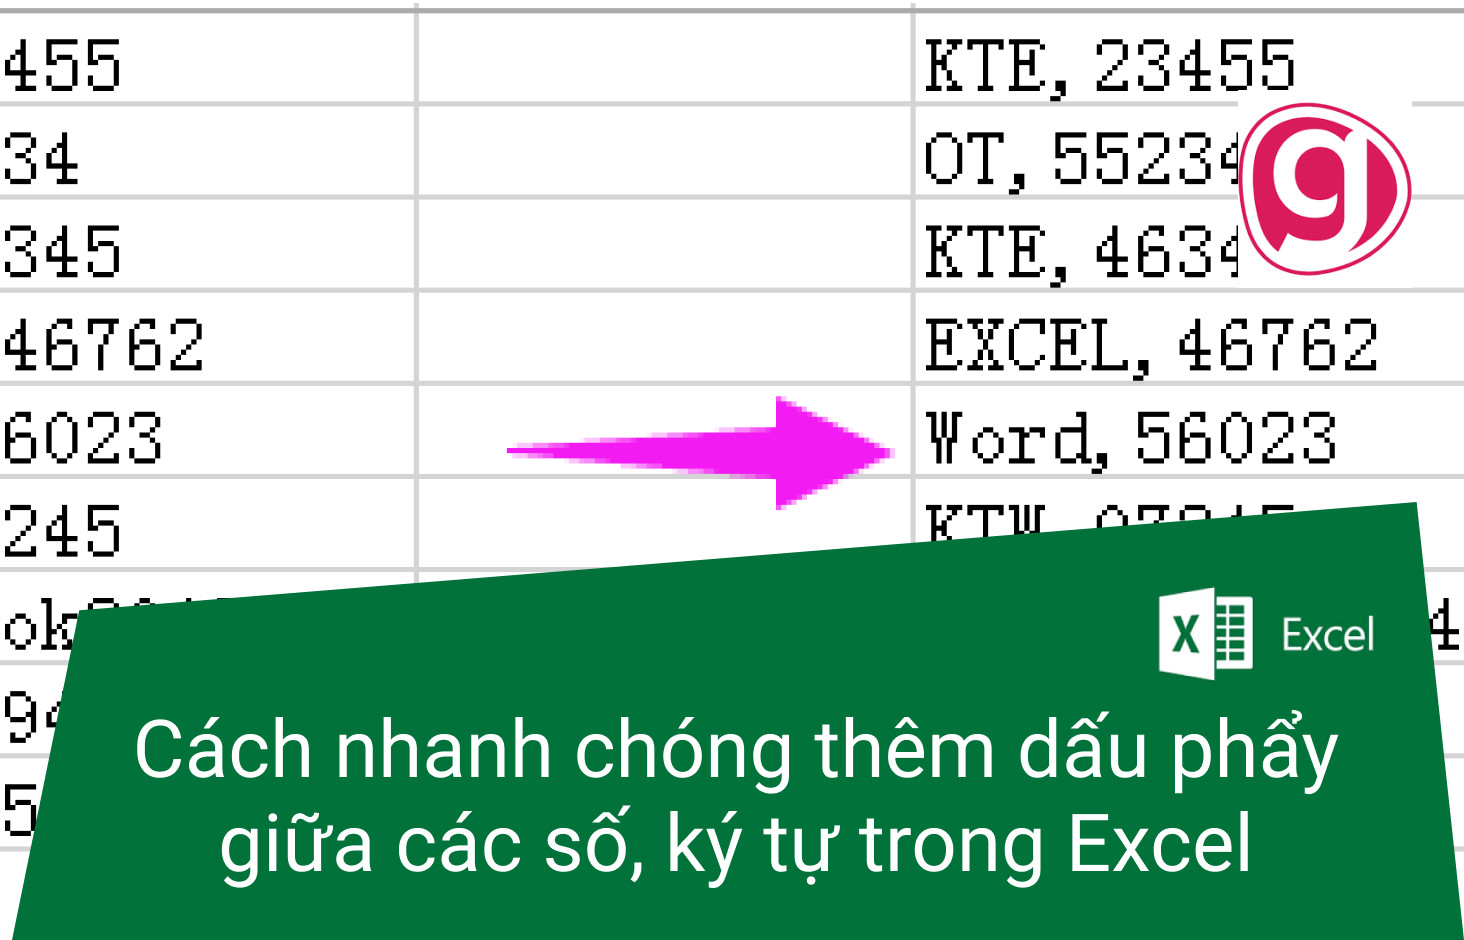 Cách nhanh chóng thêm dấu phẩy giữa các số, ký tự trong Excel